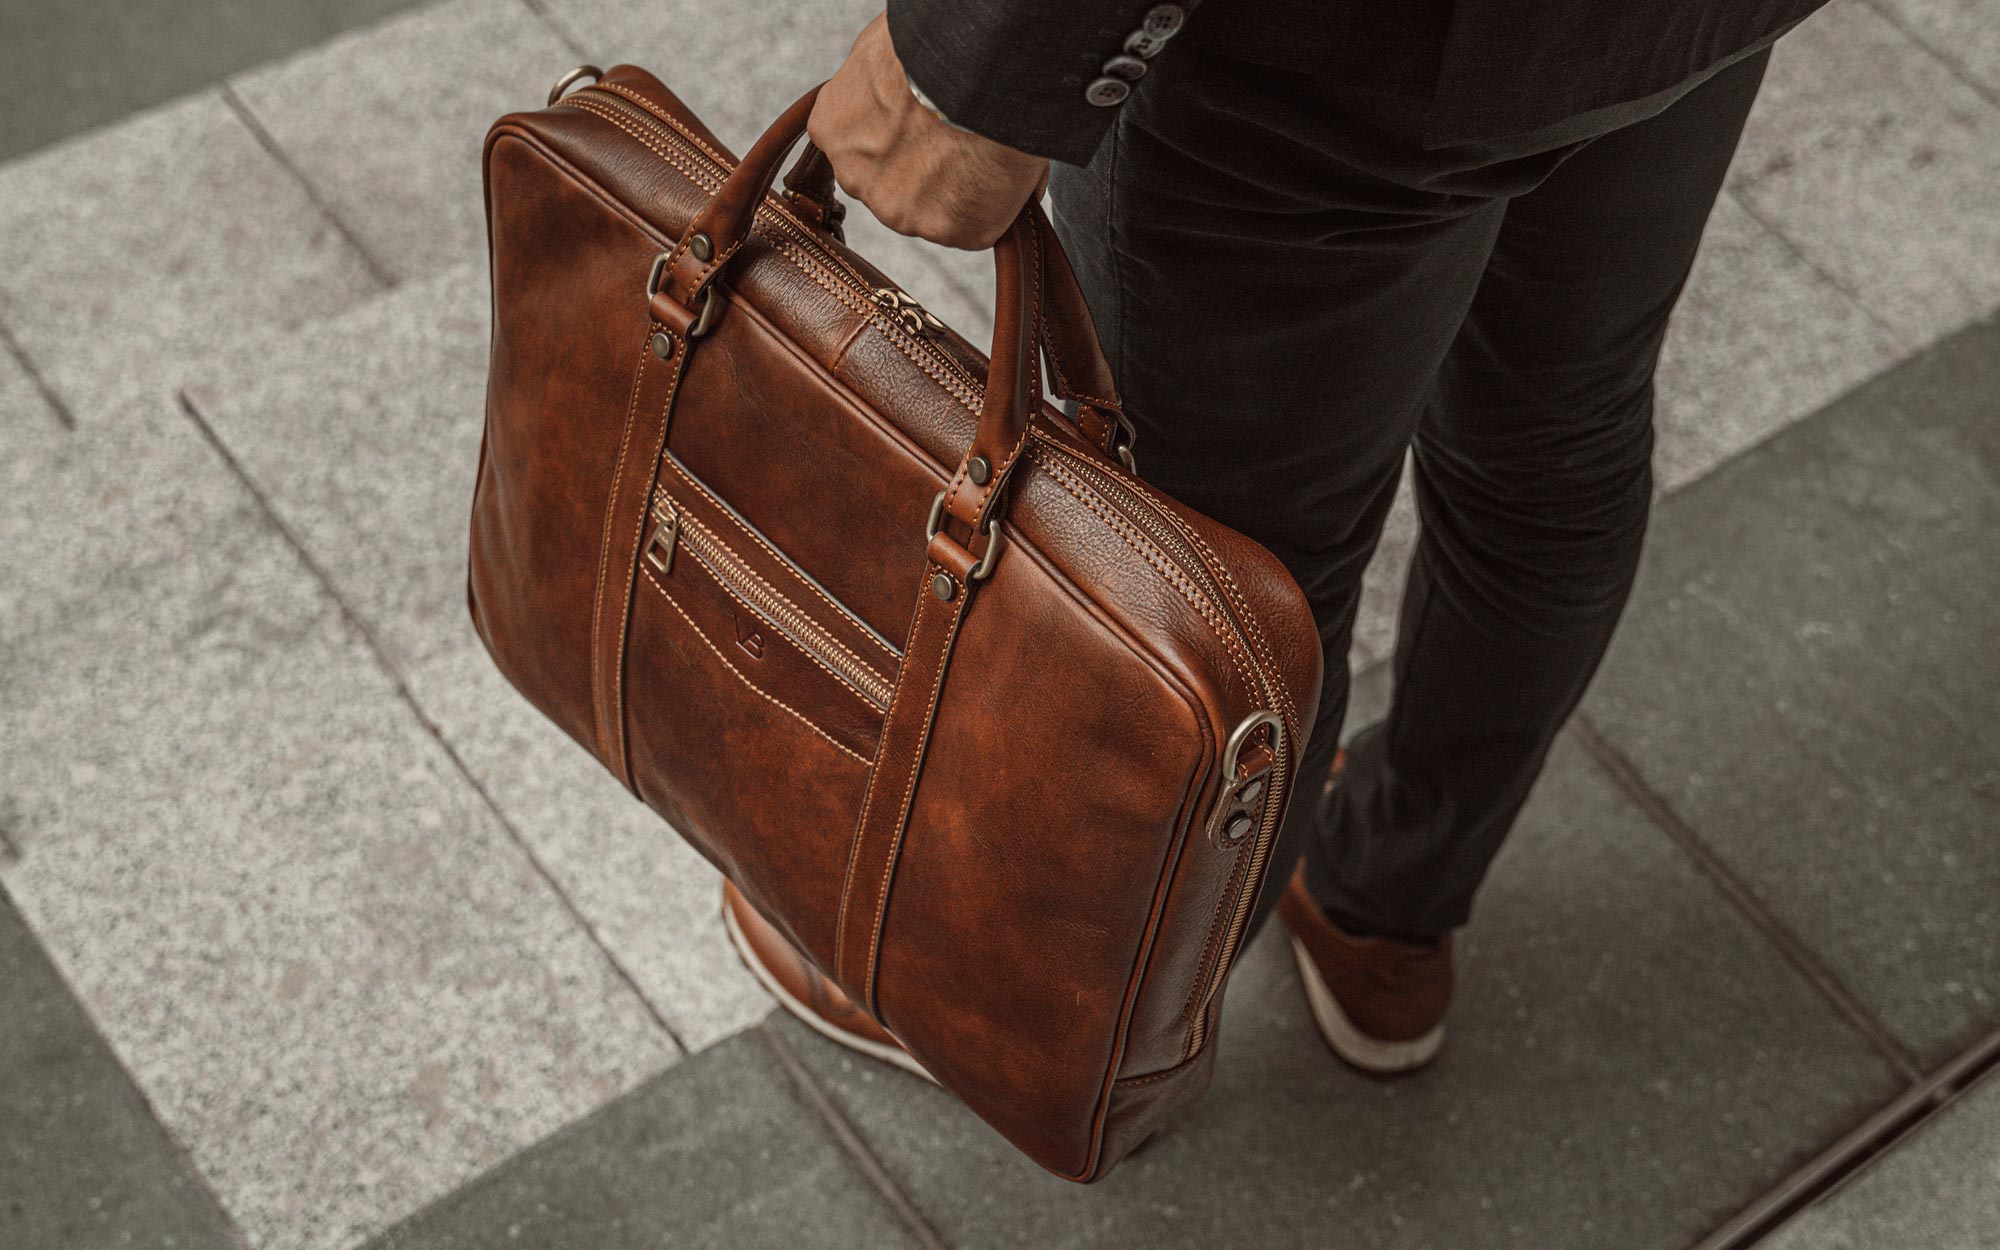 Von Baer Elegant Men's Premium Italian Full-Grain Leather Slim Laptop Bag, Brown